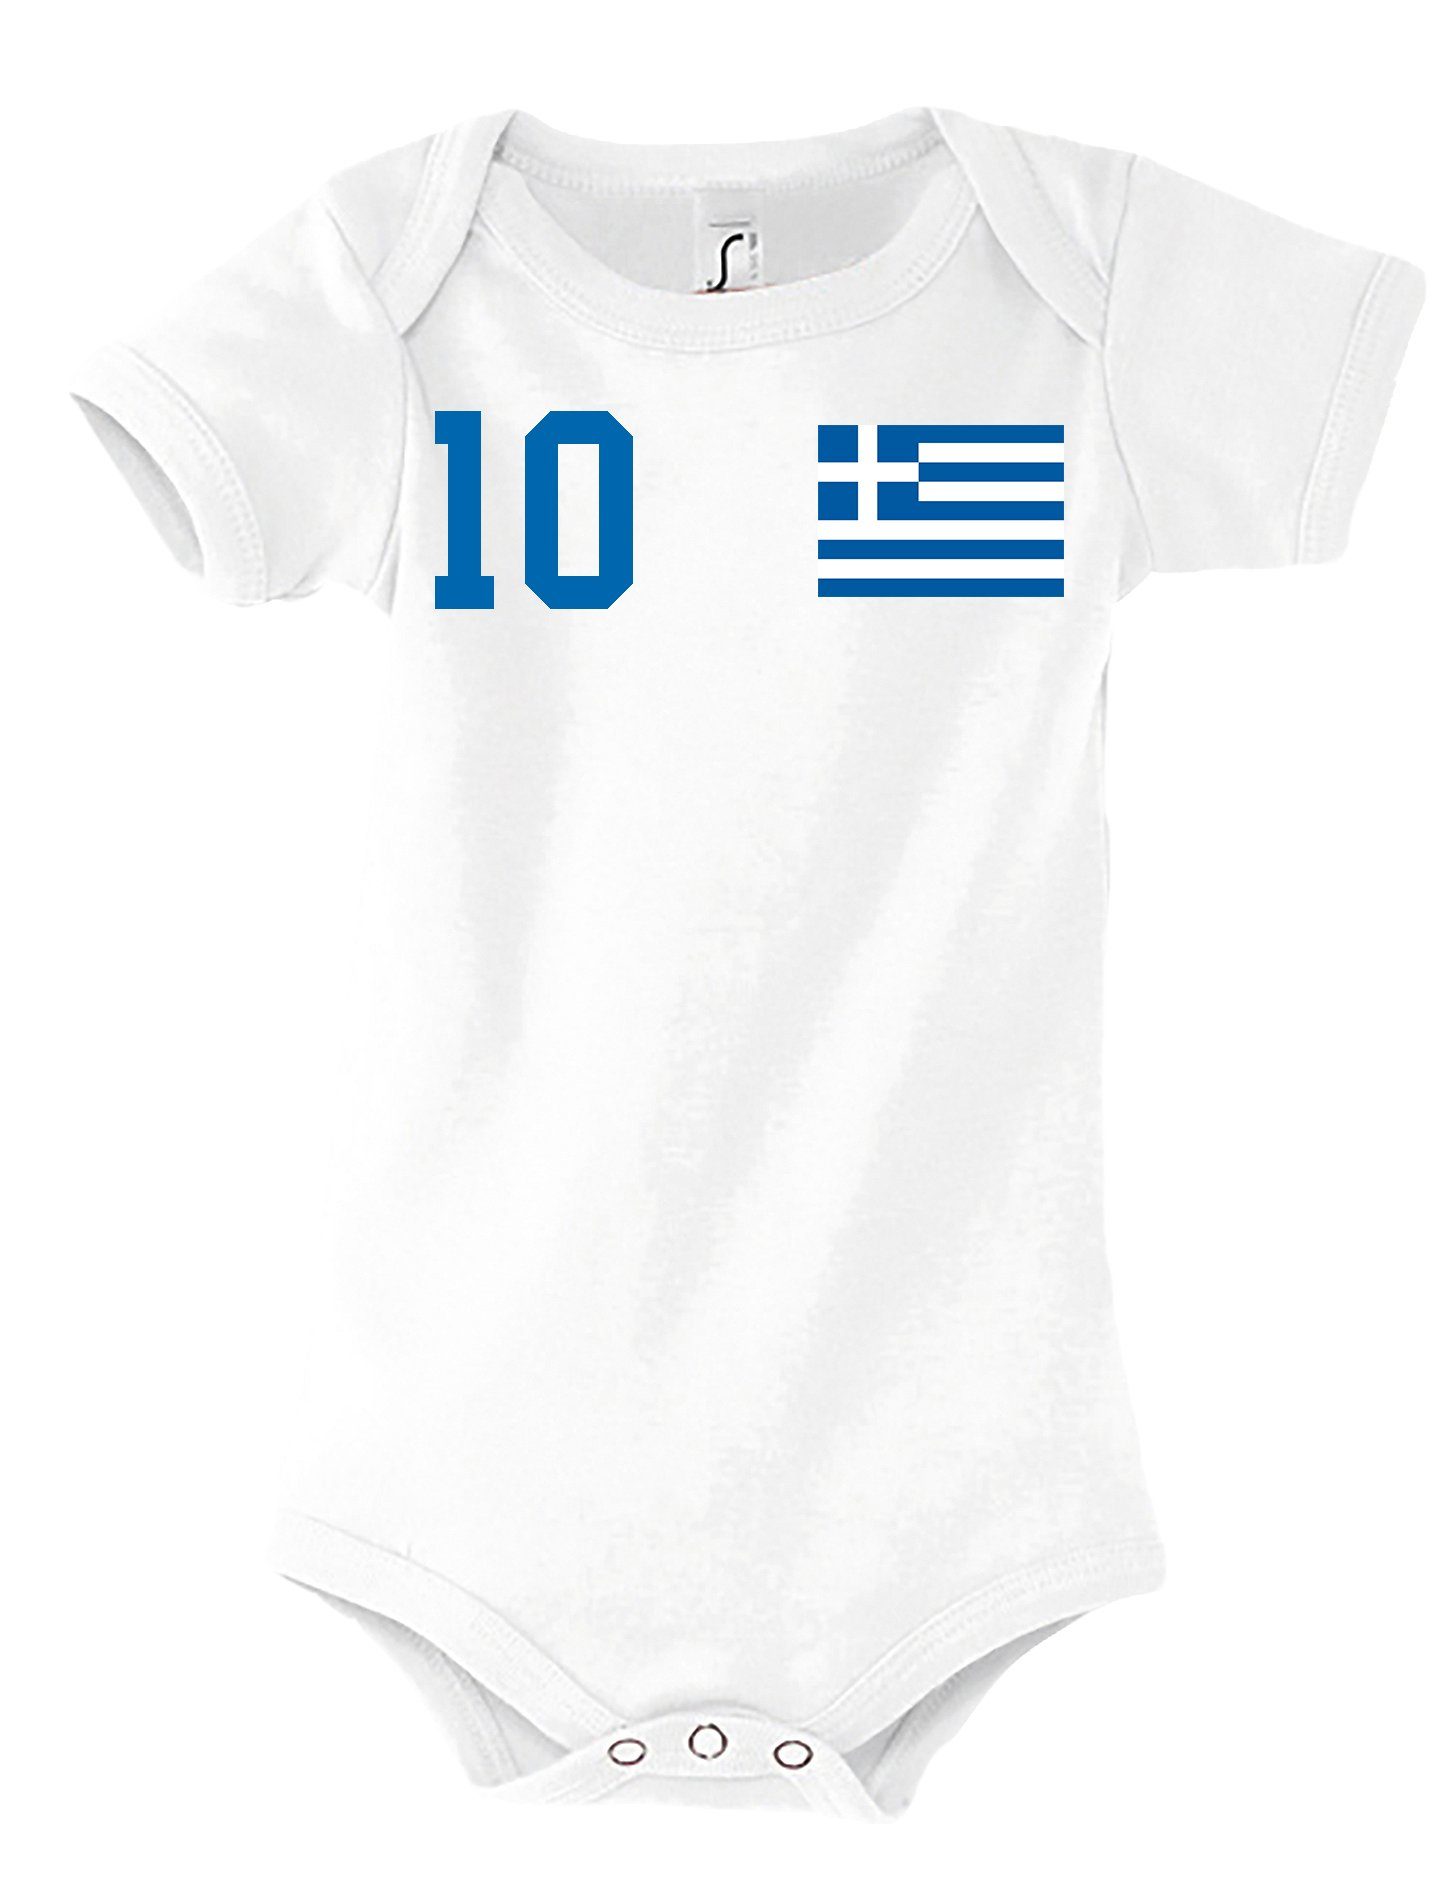 Kurzarmbody Baby Designz Body mit Griechenland Youth Motiv trendigem Strampler Weiß Kinder